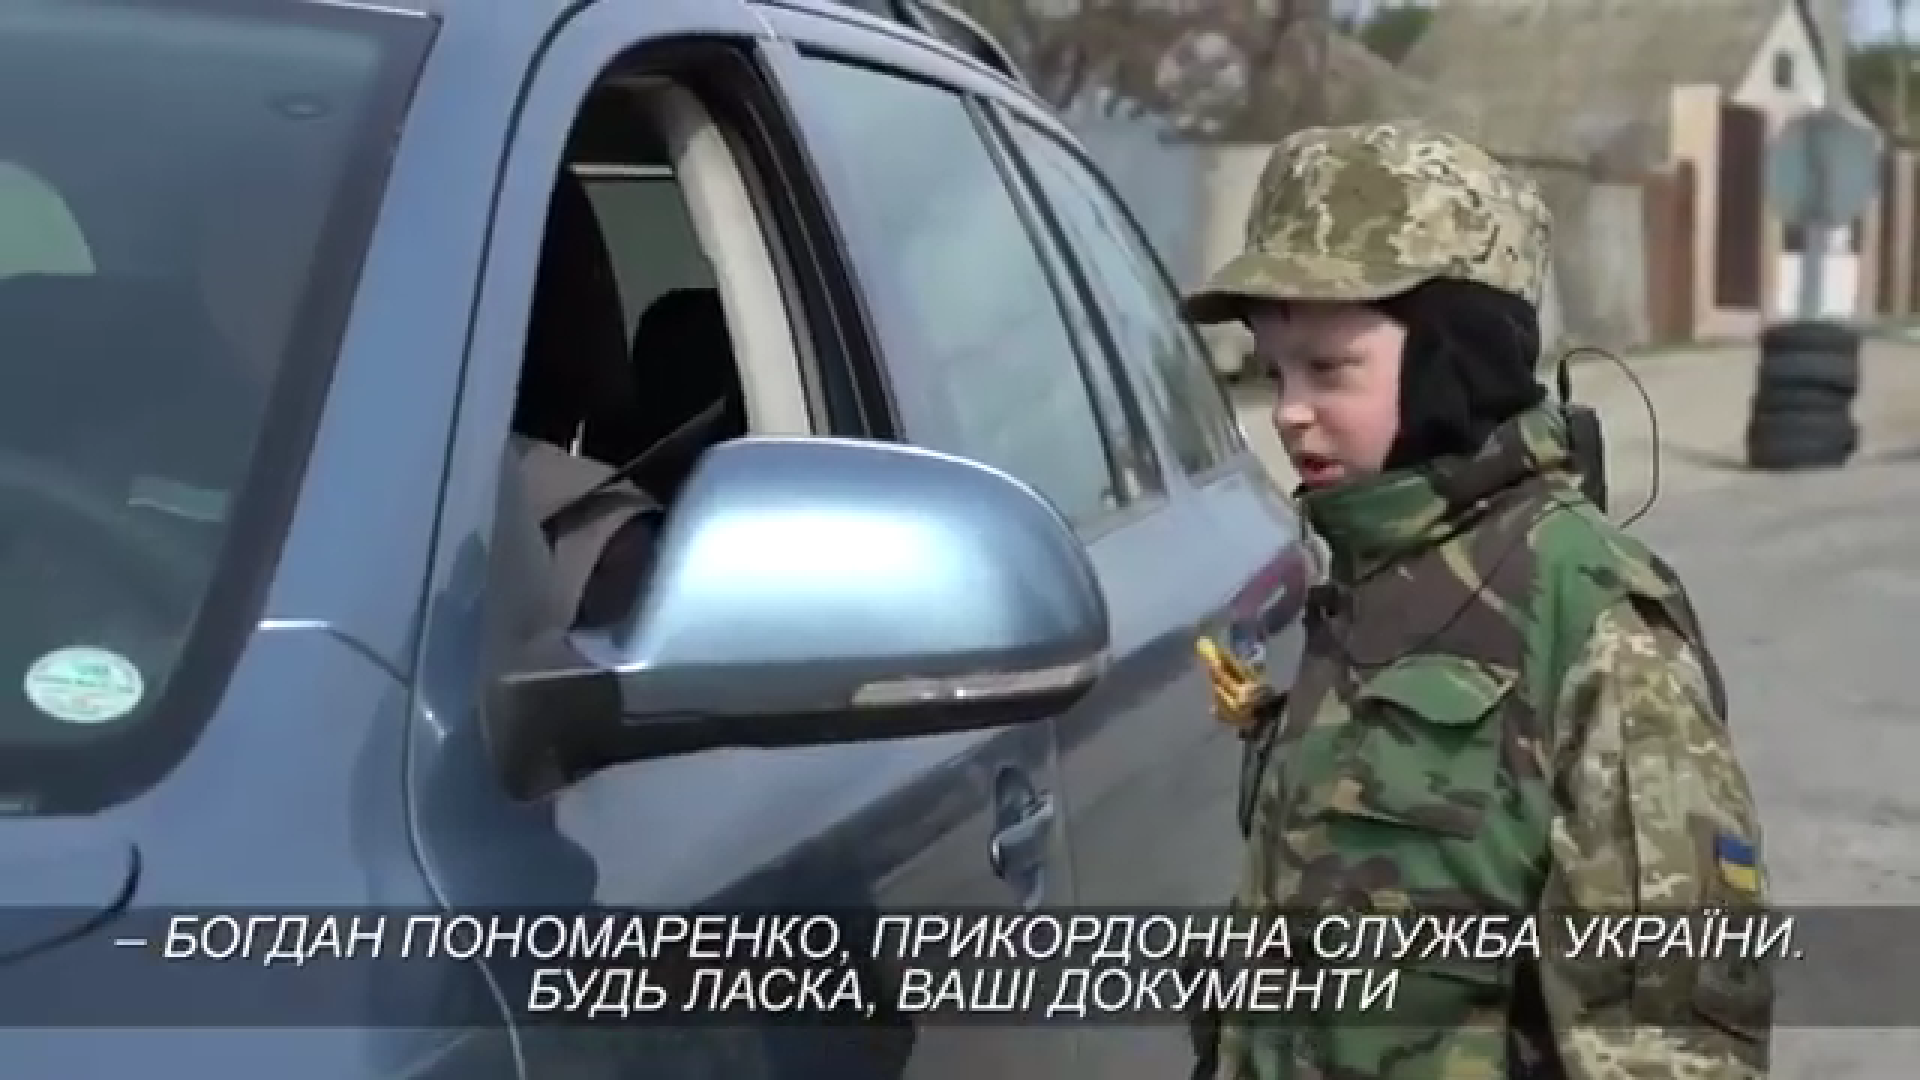 "Смелость не имеет возраста": шестилетний мальчик помогает пограничникам на блокпосту под Харьковом. Видео